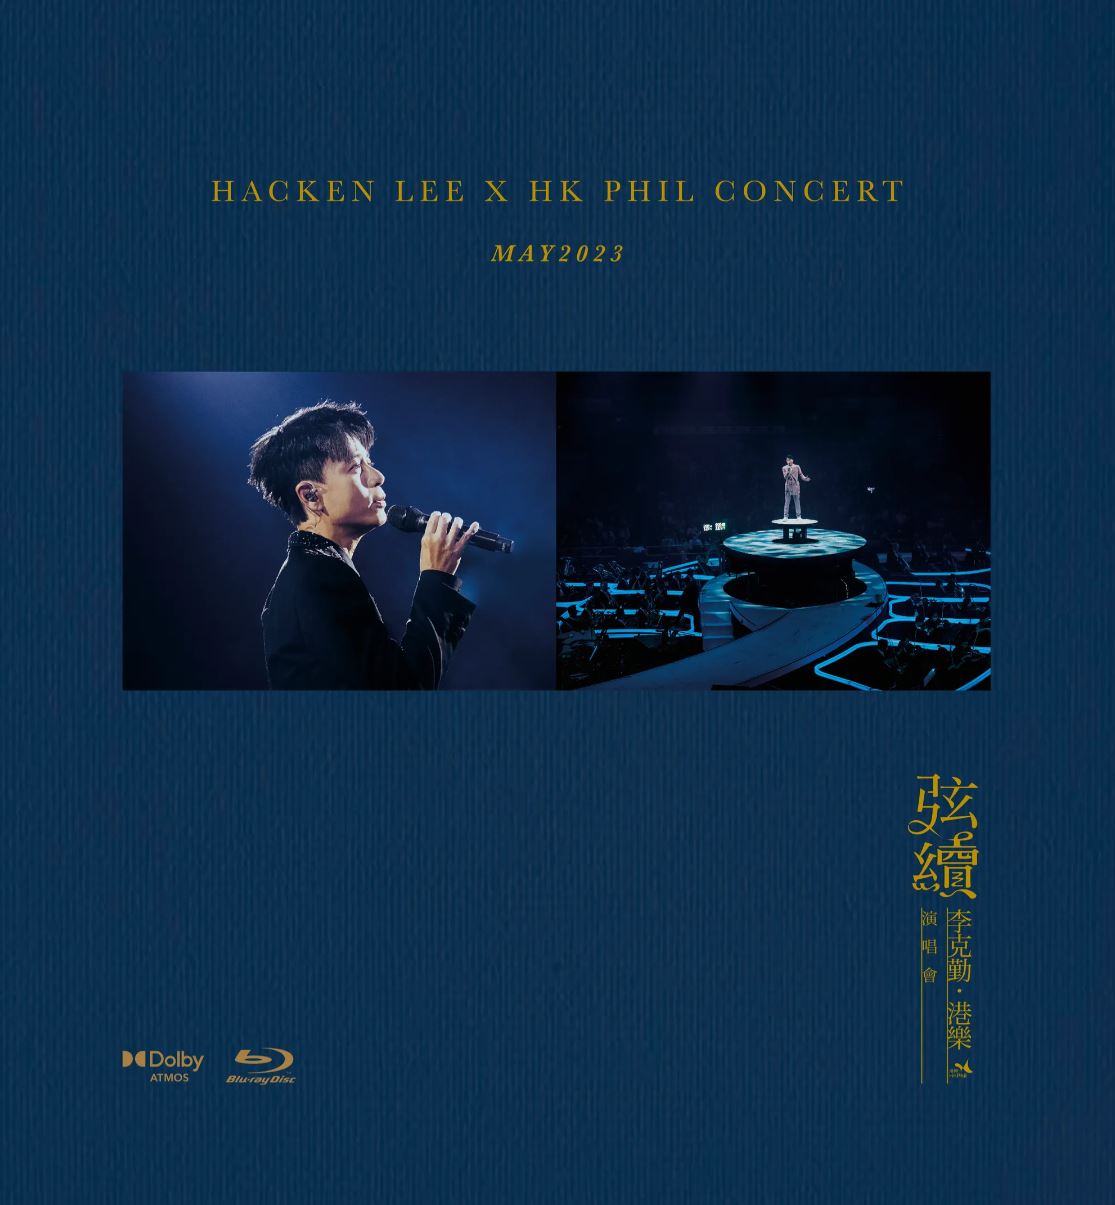 弦續 李克勤•港樂演唱會&nbsp;杜比全景聲 演唱會藍光碟 Hacken Lee X HKPhil Concert 2023 (2BLU RAY+2CD) Blu-ray 1080i AVC Dolby TrueHD Atmos 7 1-CHDBits[64.81GB]-2.jpg